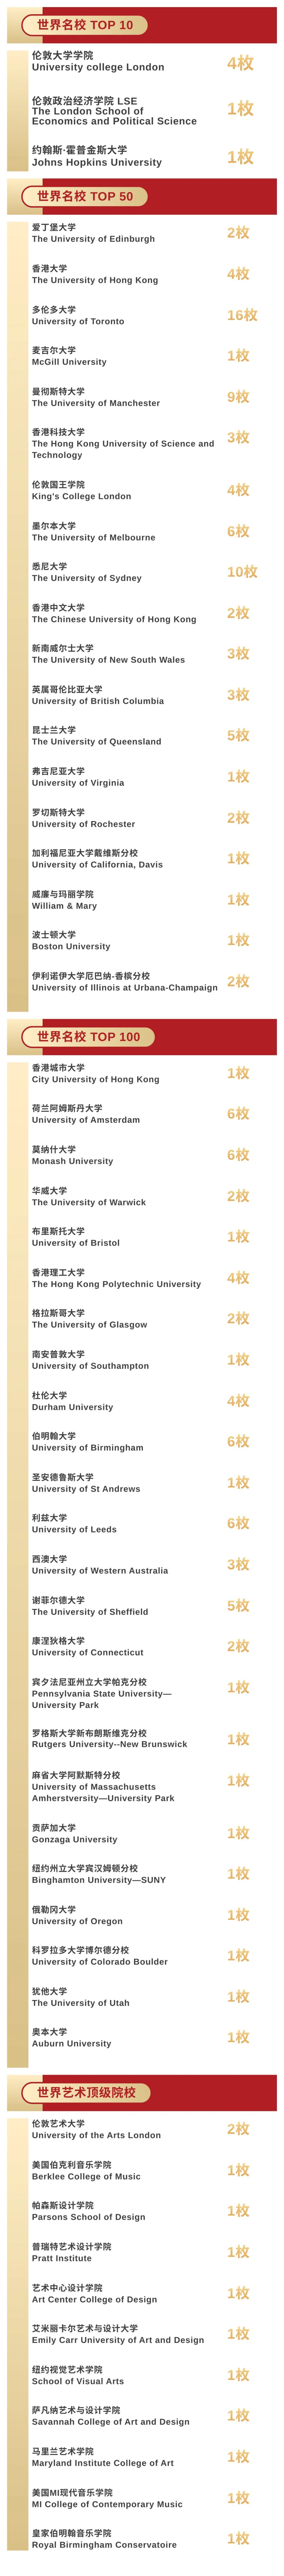 英国G5 UCL、LSE, 美国UC Davis、波士顿大学, UBC+HKU双学士学位!DP2惊喜连连!